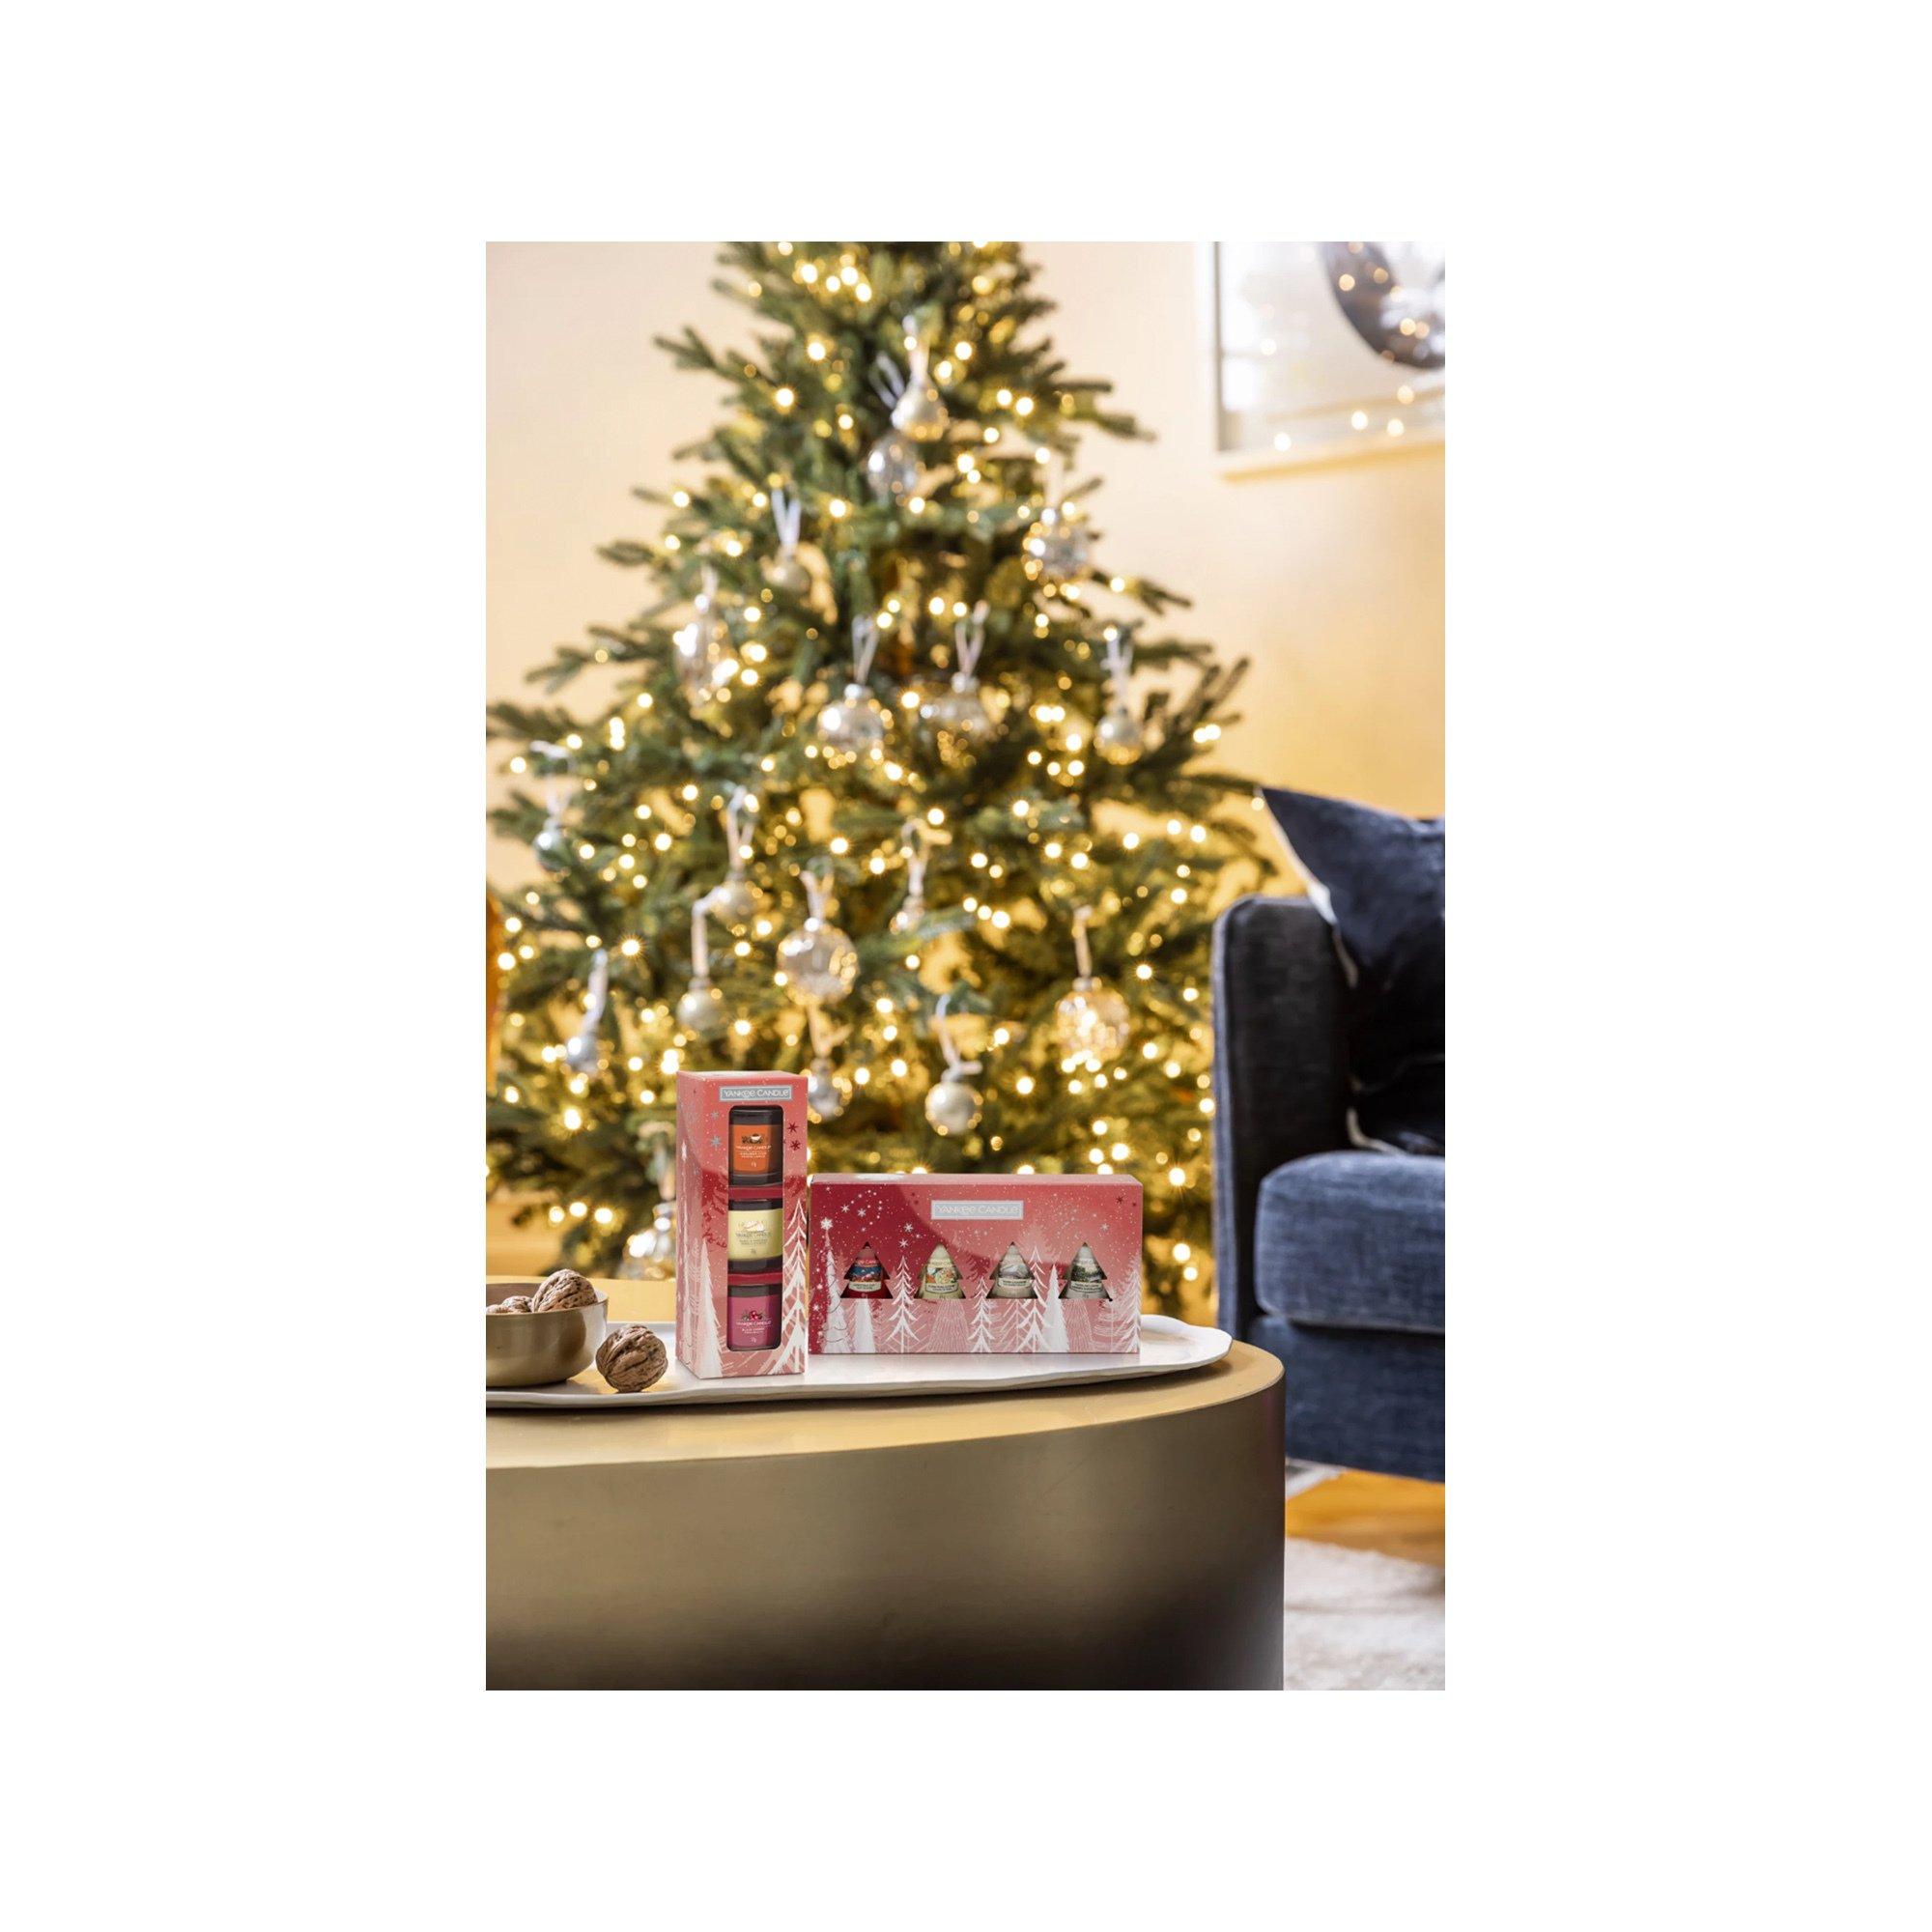 YANKEE CANDLE Geschenkset Weihnachten Duftkerzen Holiday Bright Lights 4 Original Votive Giftset 